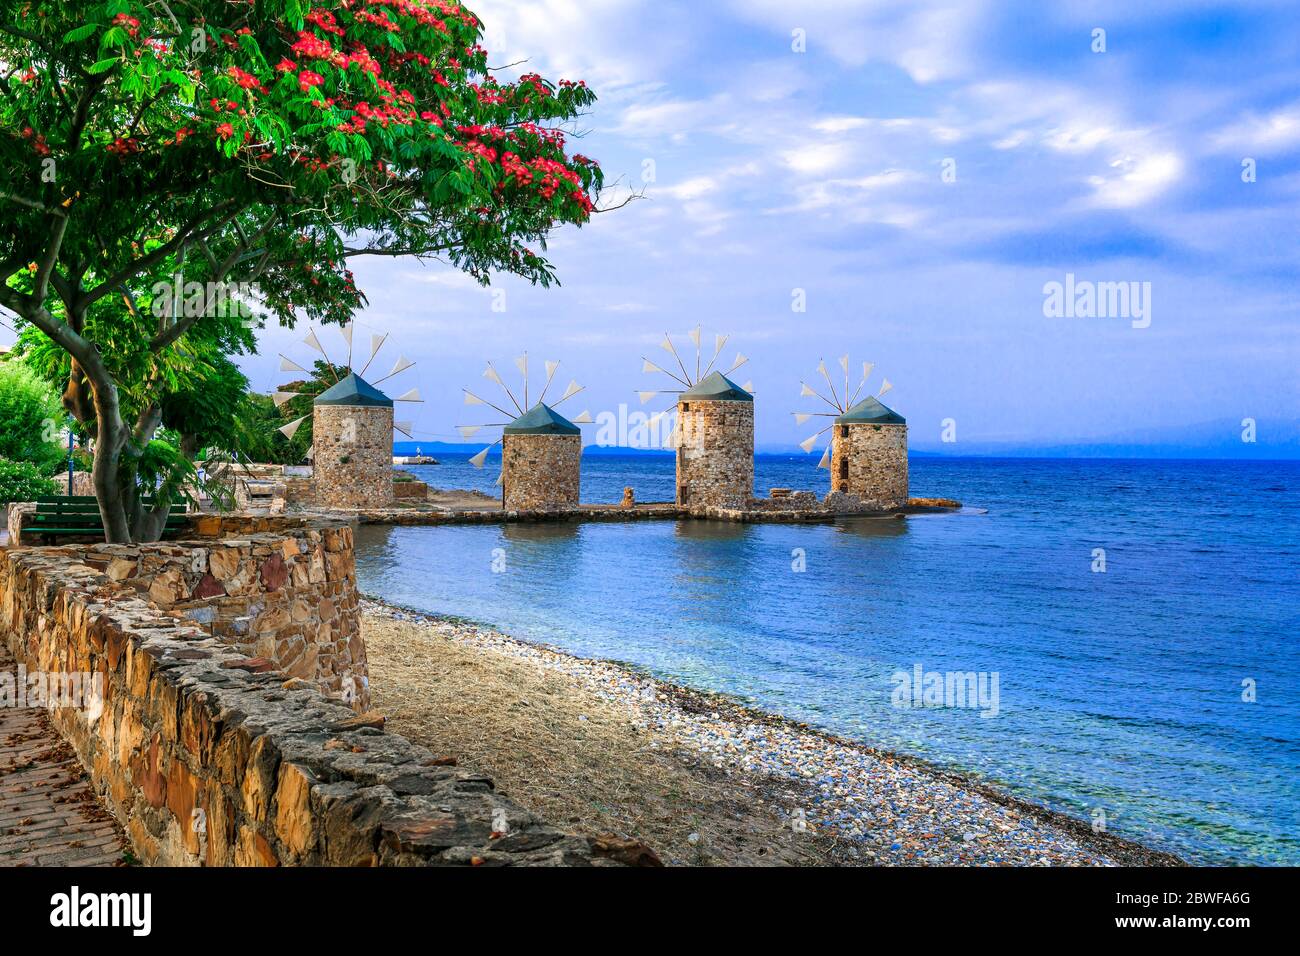 Authentique paysage traditionnel grec - anciens moulins à vent près de la mer - point de repère de l'île de Chios Banque D'Images